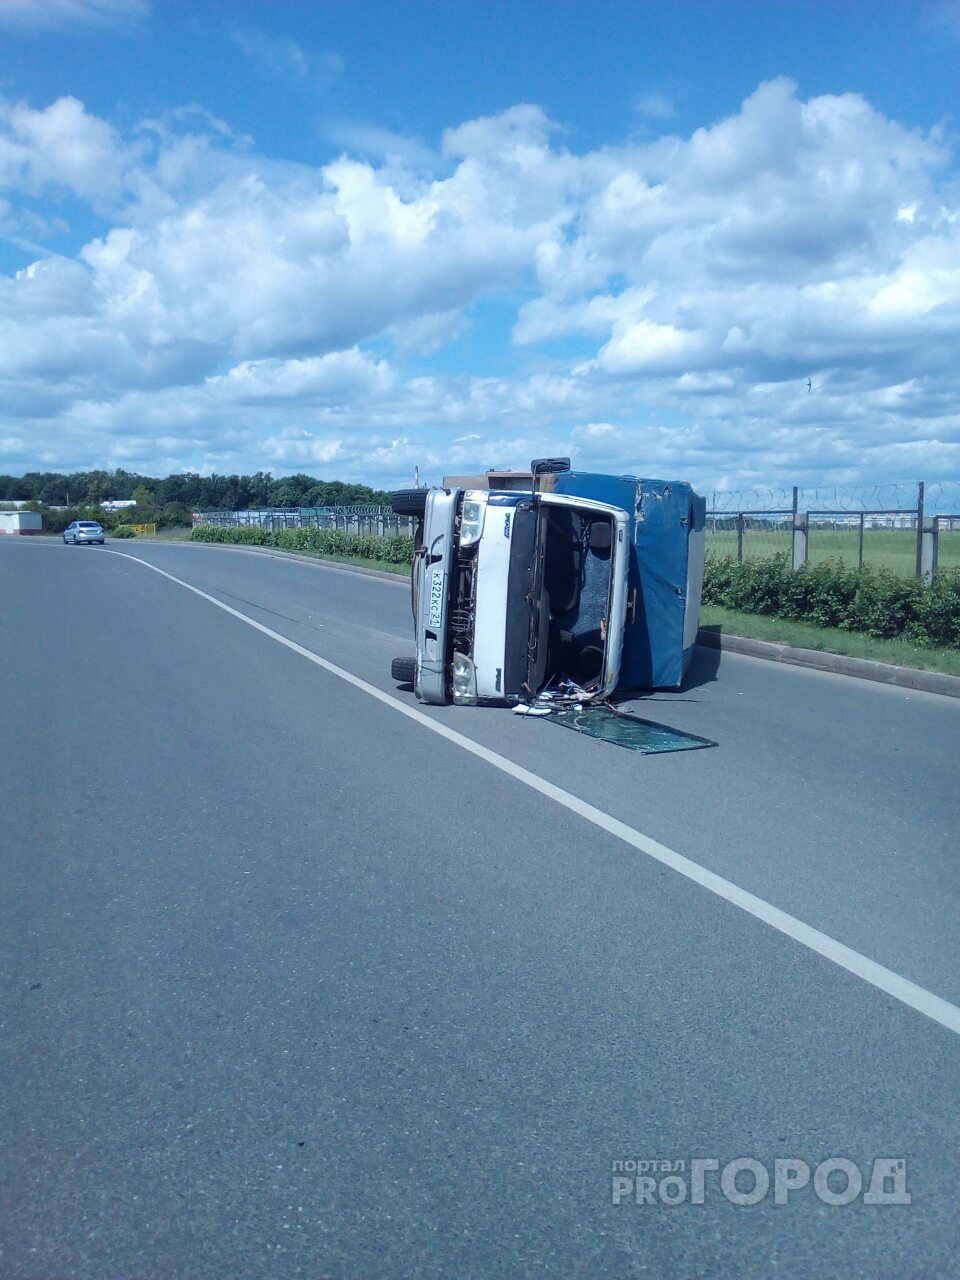 В Чебоксарах пьяный водитель опрокинул свой грузовик